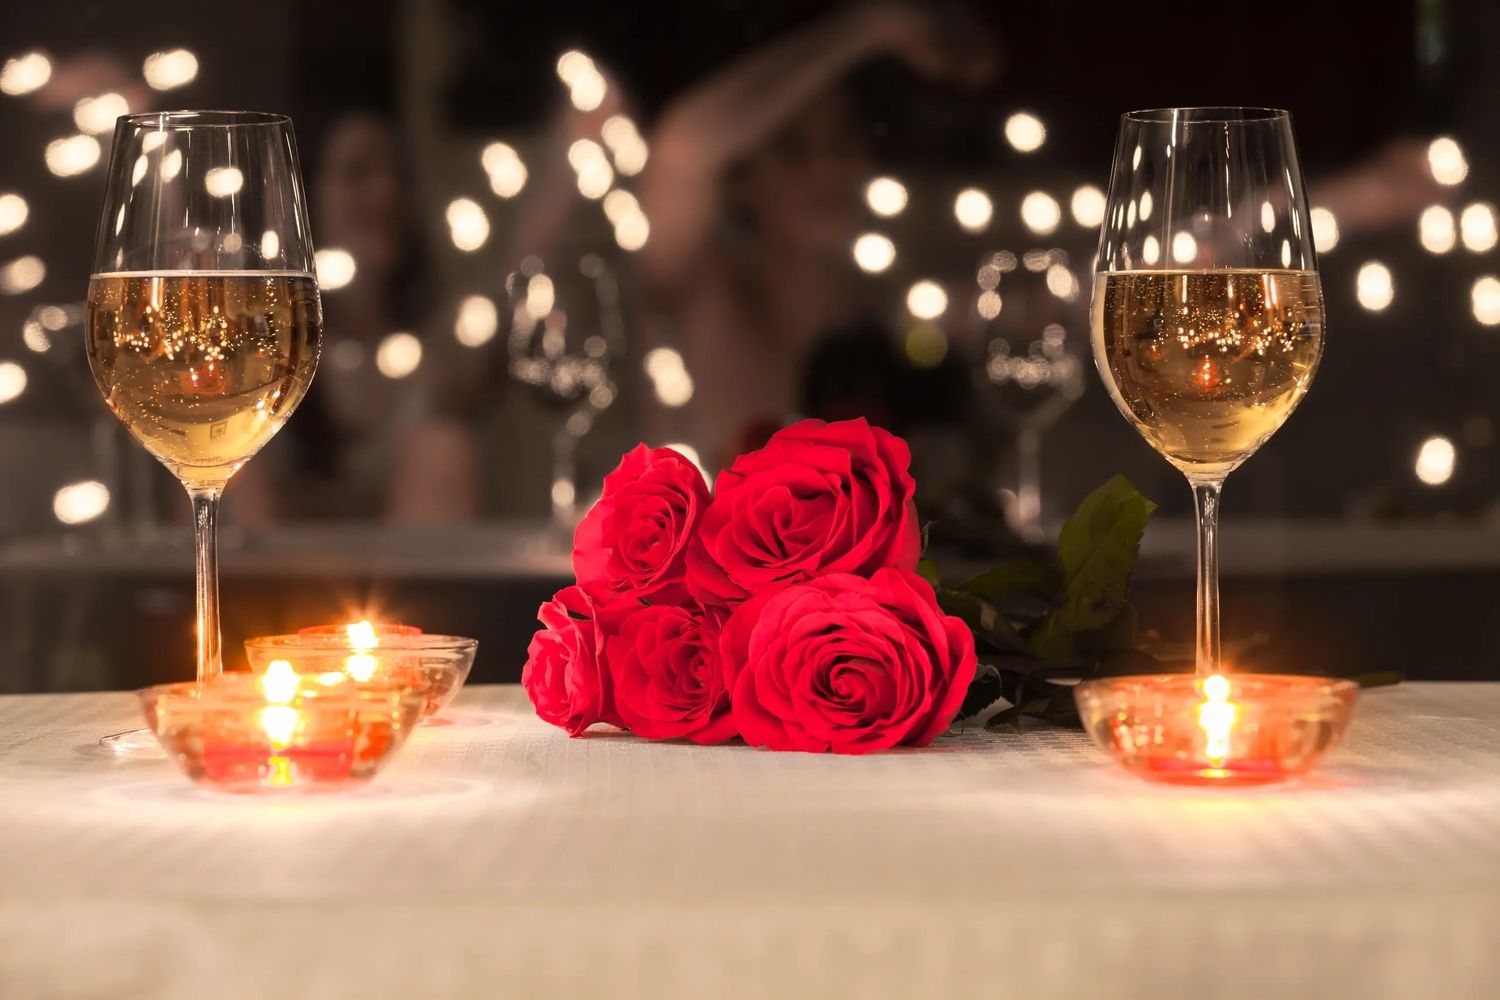 Romantic dinner setting